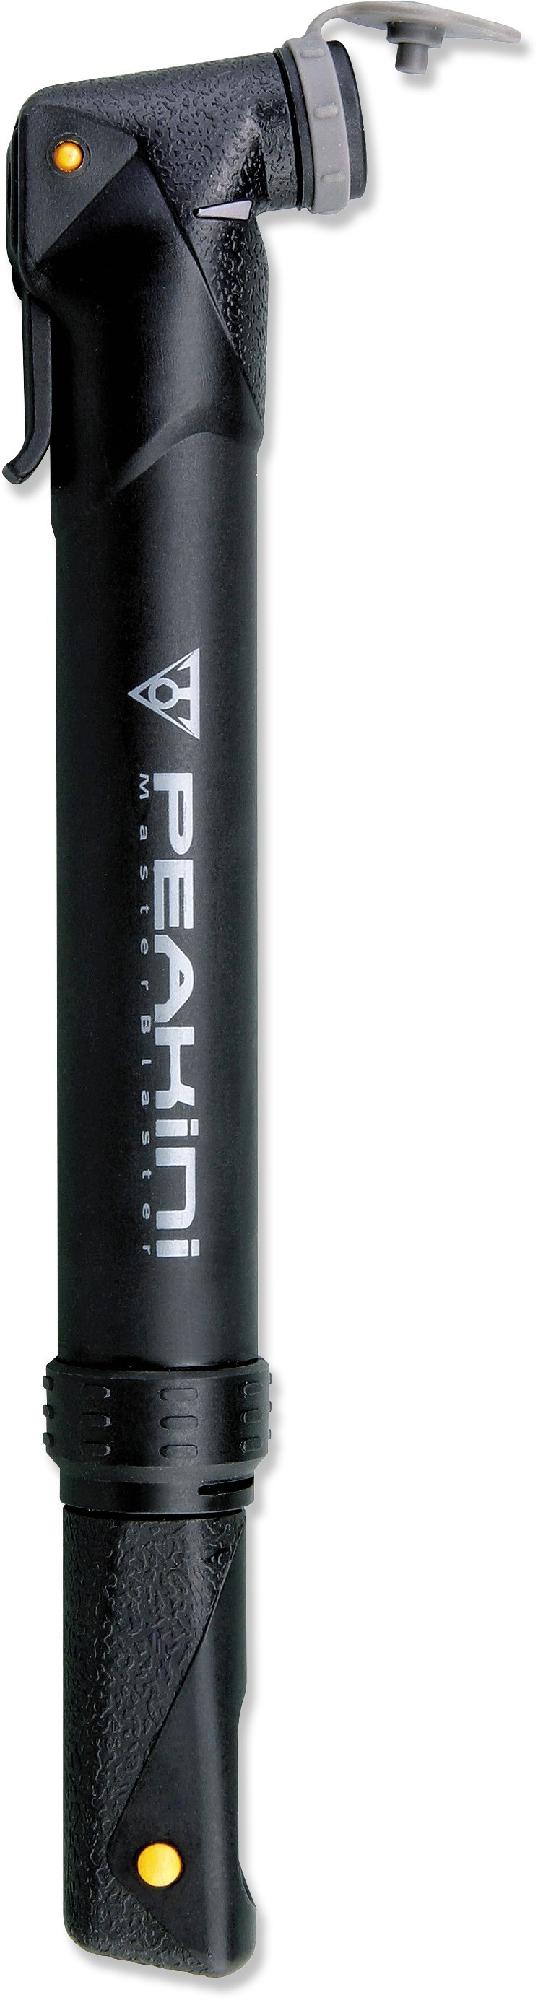 Мини-насос Peakini II Topeak насос велосипедный накачиваемый высокого давления west biking фунтов на квадратный дюйм алюминиевый со шлангом